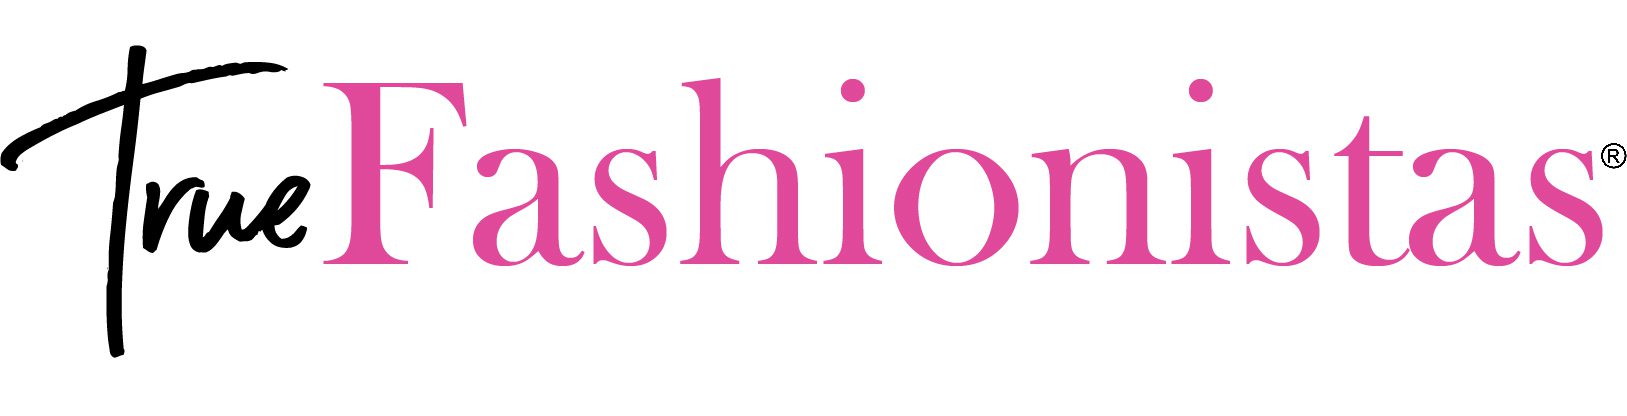 True fashionitas logo